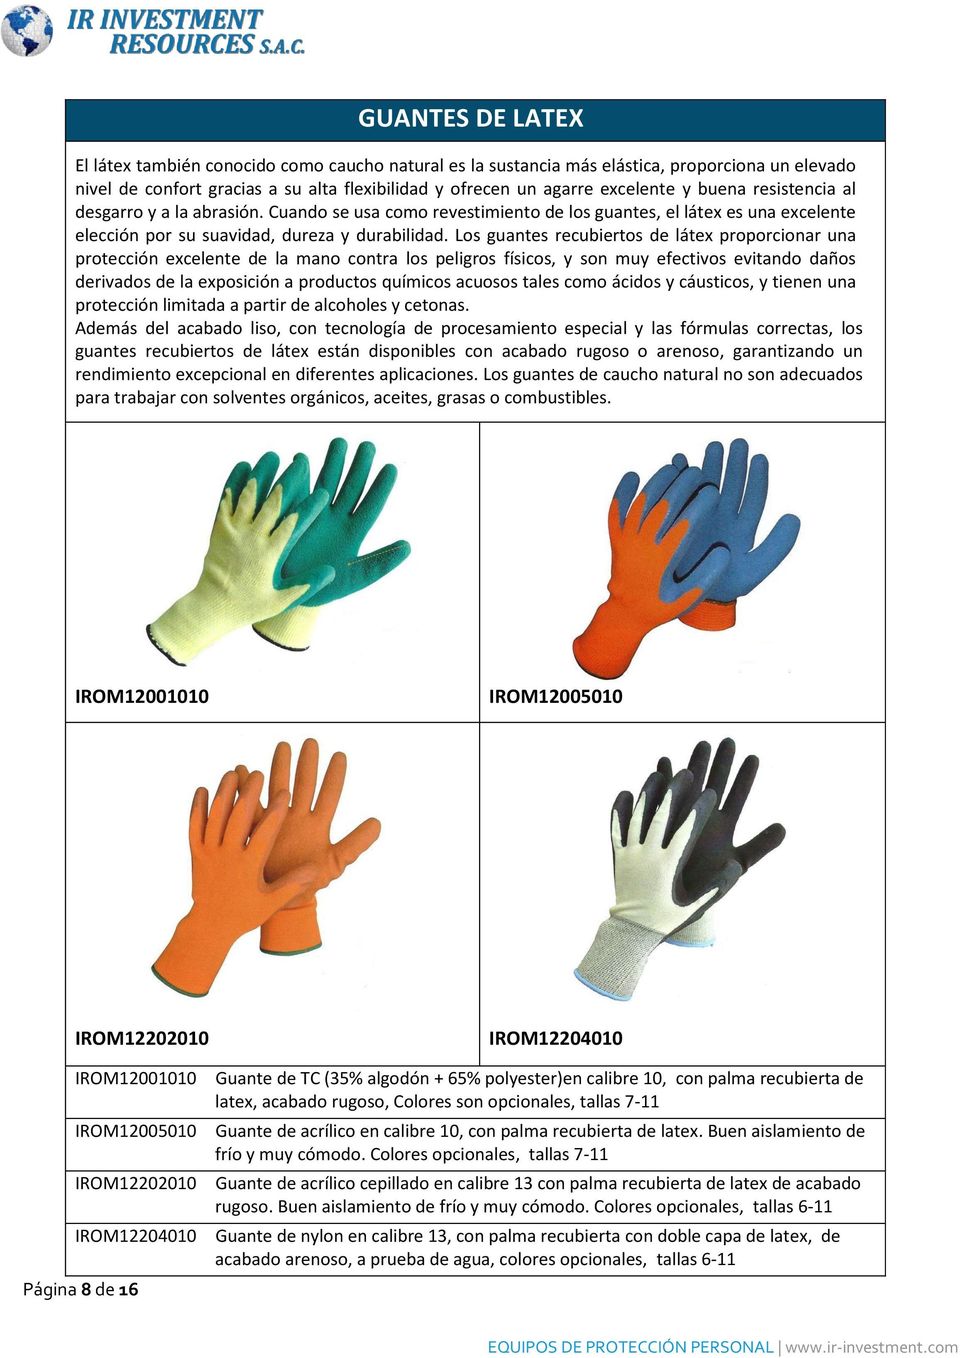 Los guantes recubiertos de látex proporcionar una protección excelente de la mano contra los peligros físicos, y son muy efectivos evitando daños derivados de la exposición a productos químicos